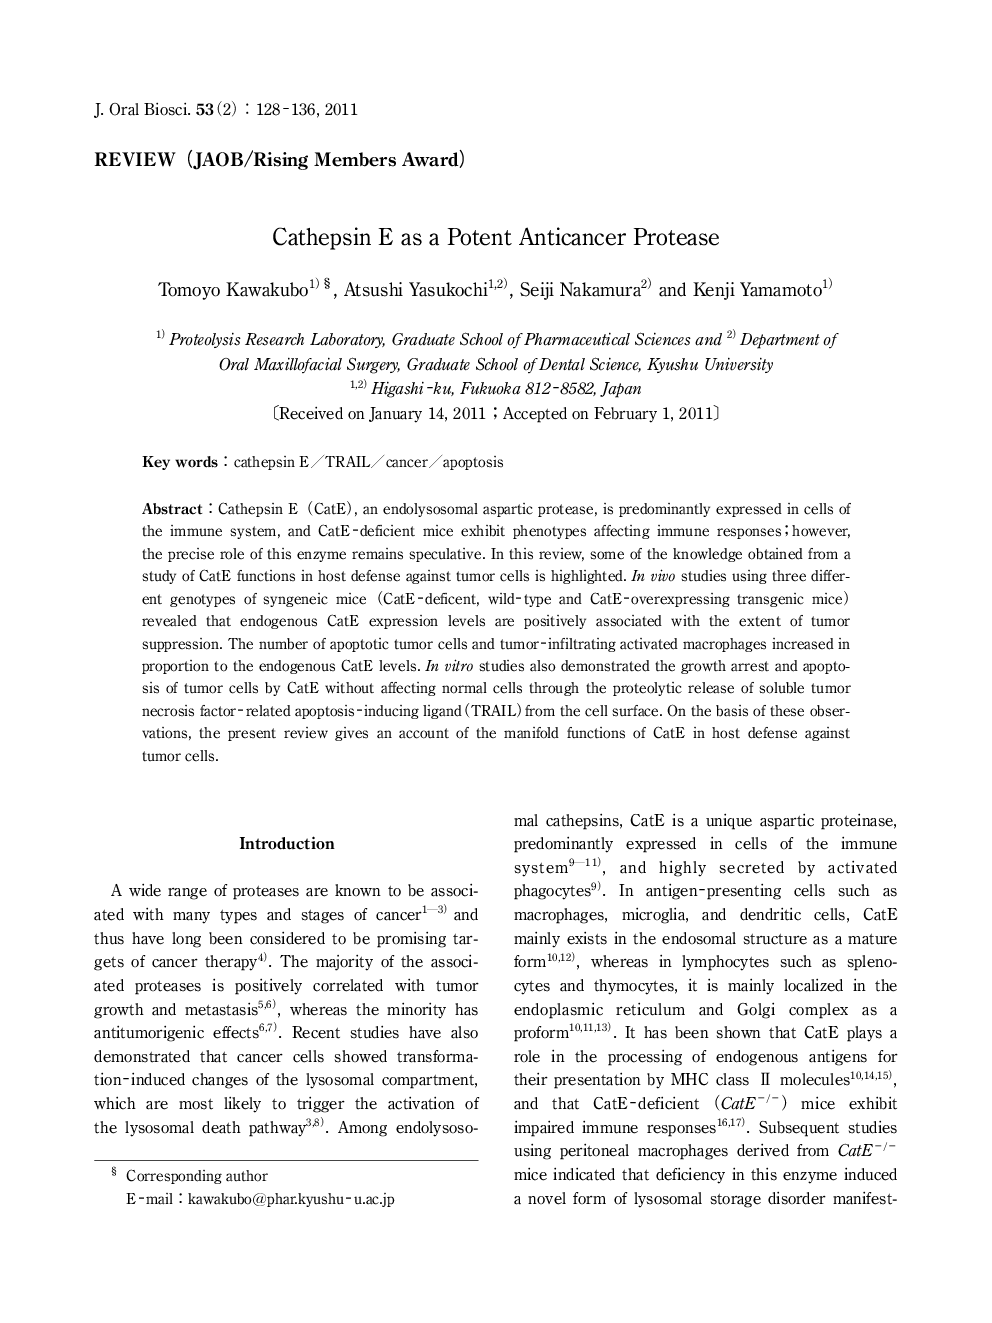 Cathepsin E as a Potent Anticancer Protease